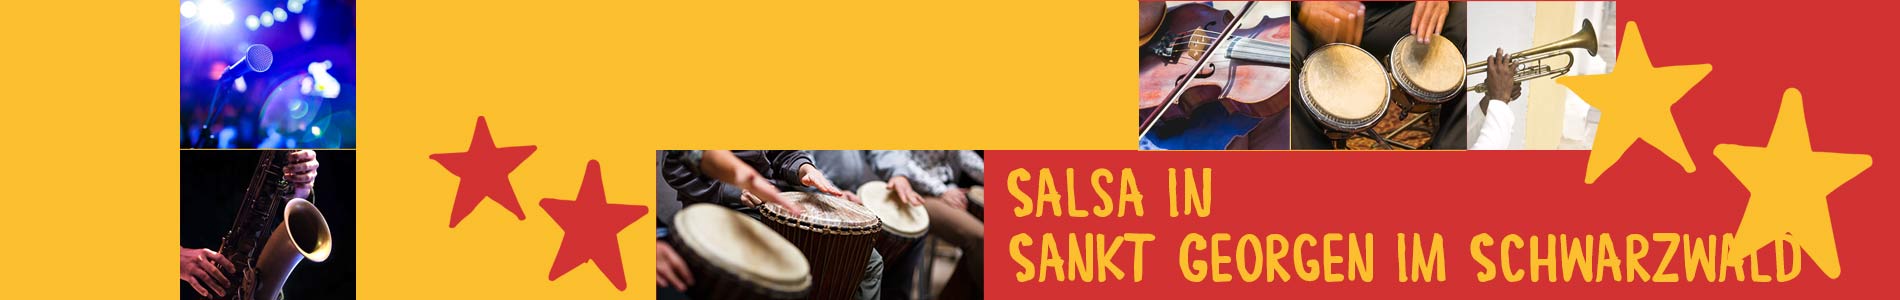 Salsa in Sankt Georgen im Schwarzwald – Salsa lernen und tanzen, Tanzkurse, Partys, Veranstaltungen